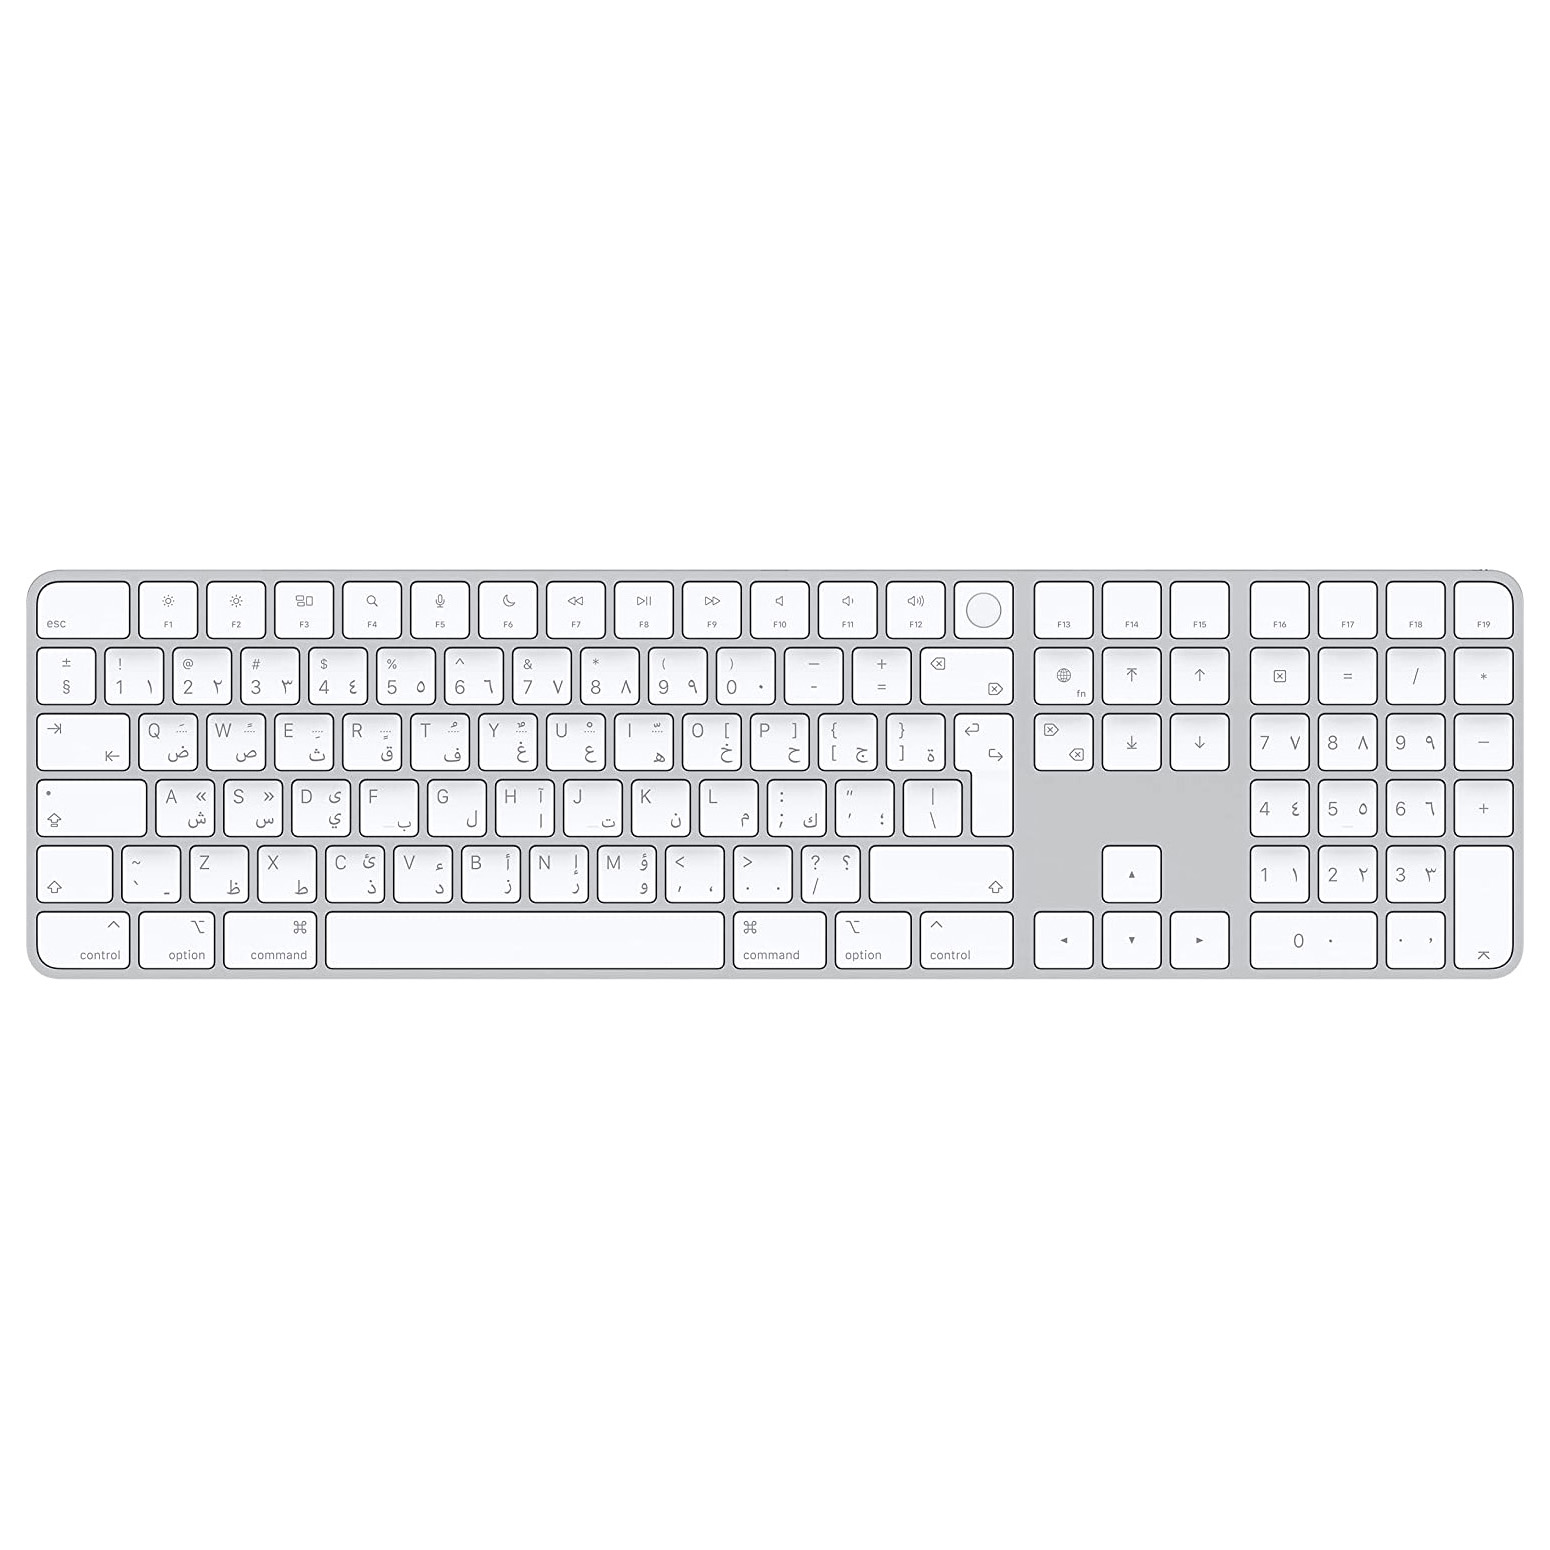 Клавиатура беспроводная Apple Magic Keyboard с Touch ID и цифровой панелью, Arabic, белые клавиши клавиатура keyboard mp 12p83us 6861 для ноутбука lenovo g500 g510 g700 g505 g505a g700a g710 черная с черной рамкой